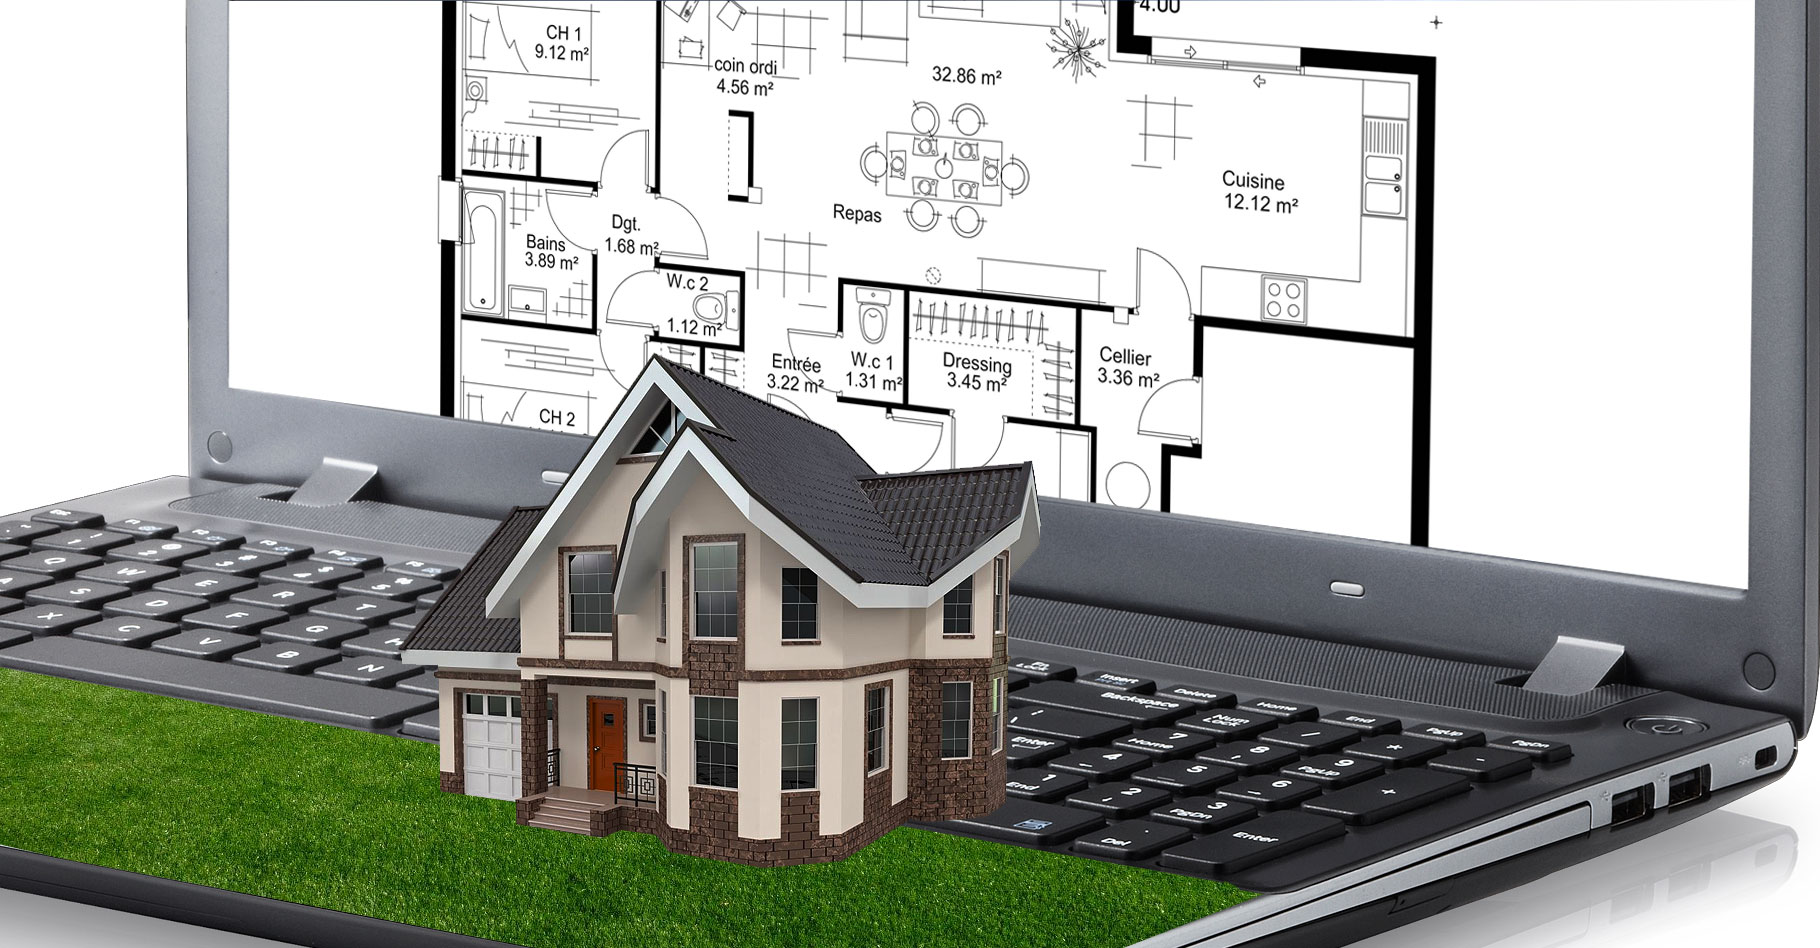 Des idées pour construire sa maison en 3D. © FS, CC by-nc 2.0 